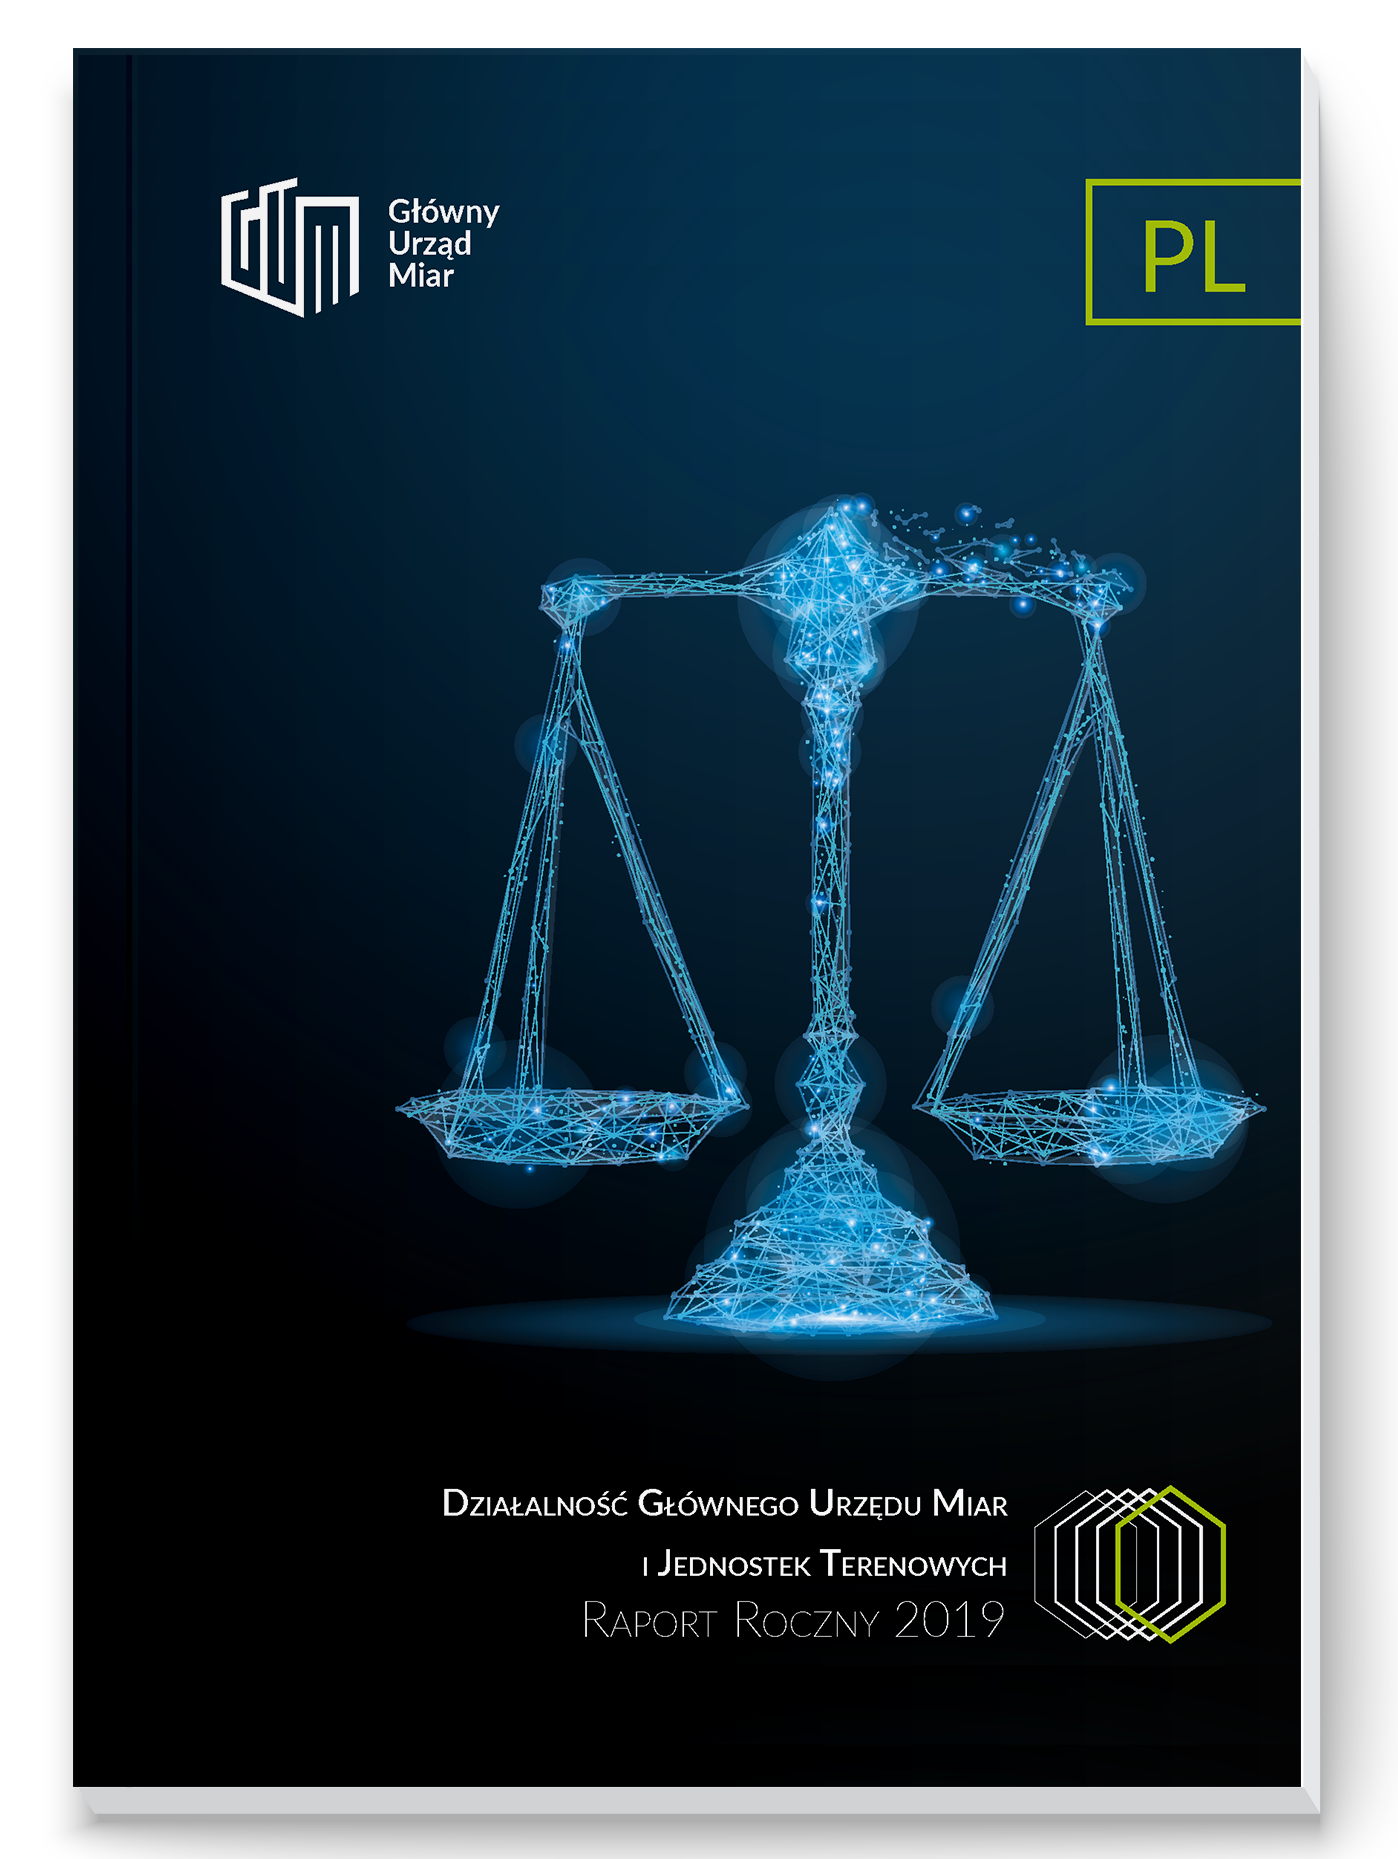 Okładka Raportu rocznego 2019: na ciemnym tle kryształowa waga. W lewym rogu logo GUM, z prawej strony napis PL, na dole okładki tytuł. 